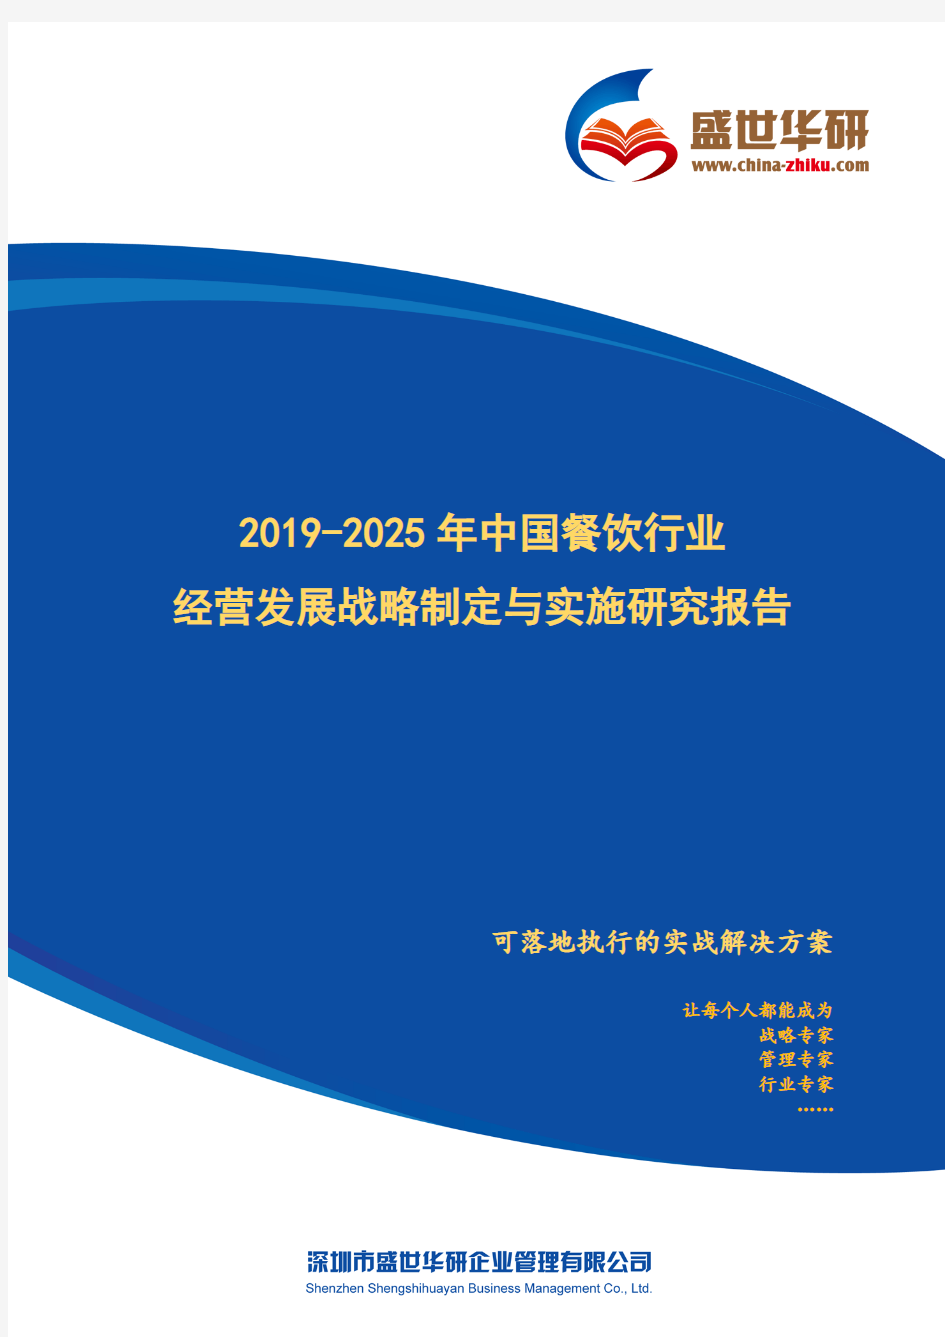 【完整版】2019-2025年中国餐饮行业经营发展战略及规划制定与实施研究报告